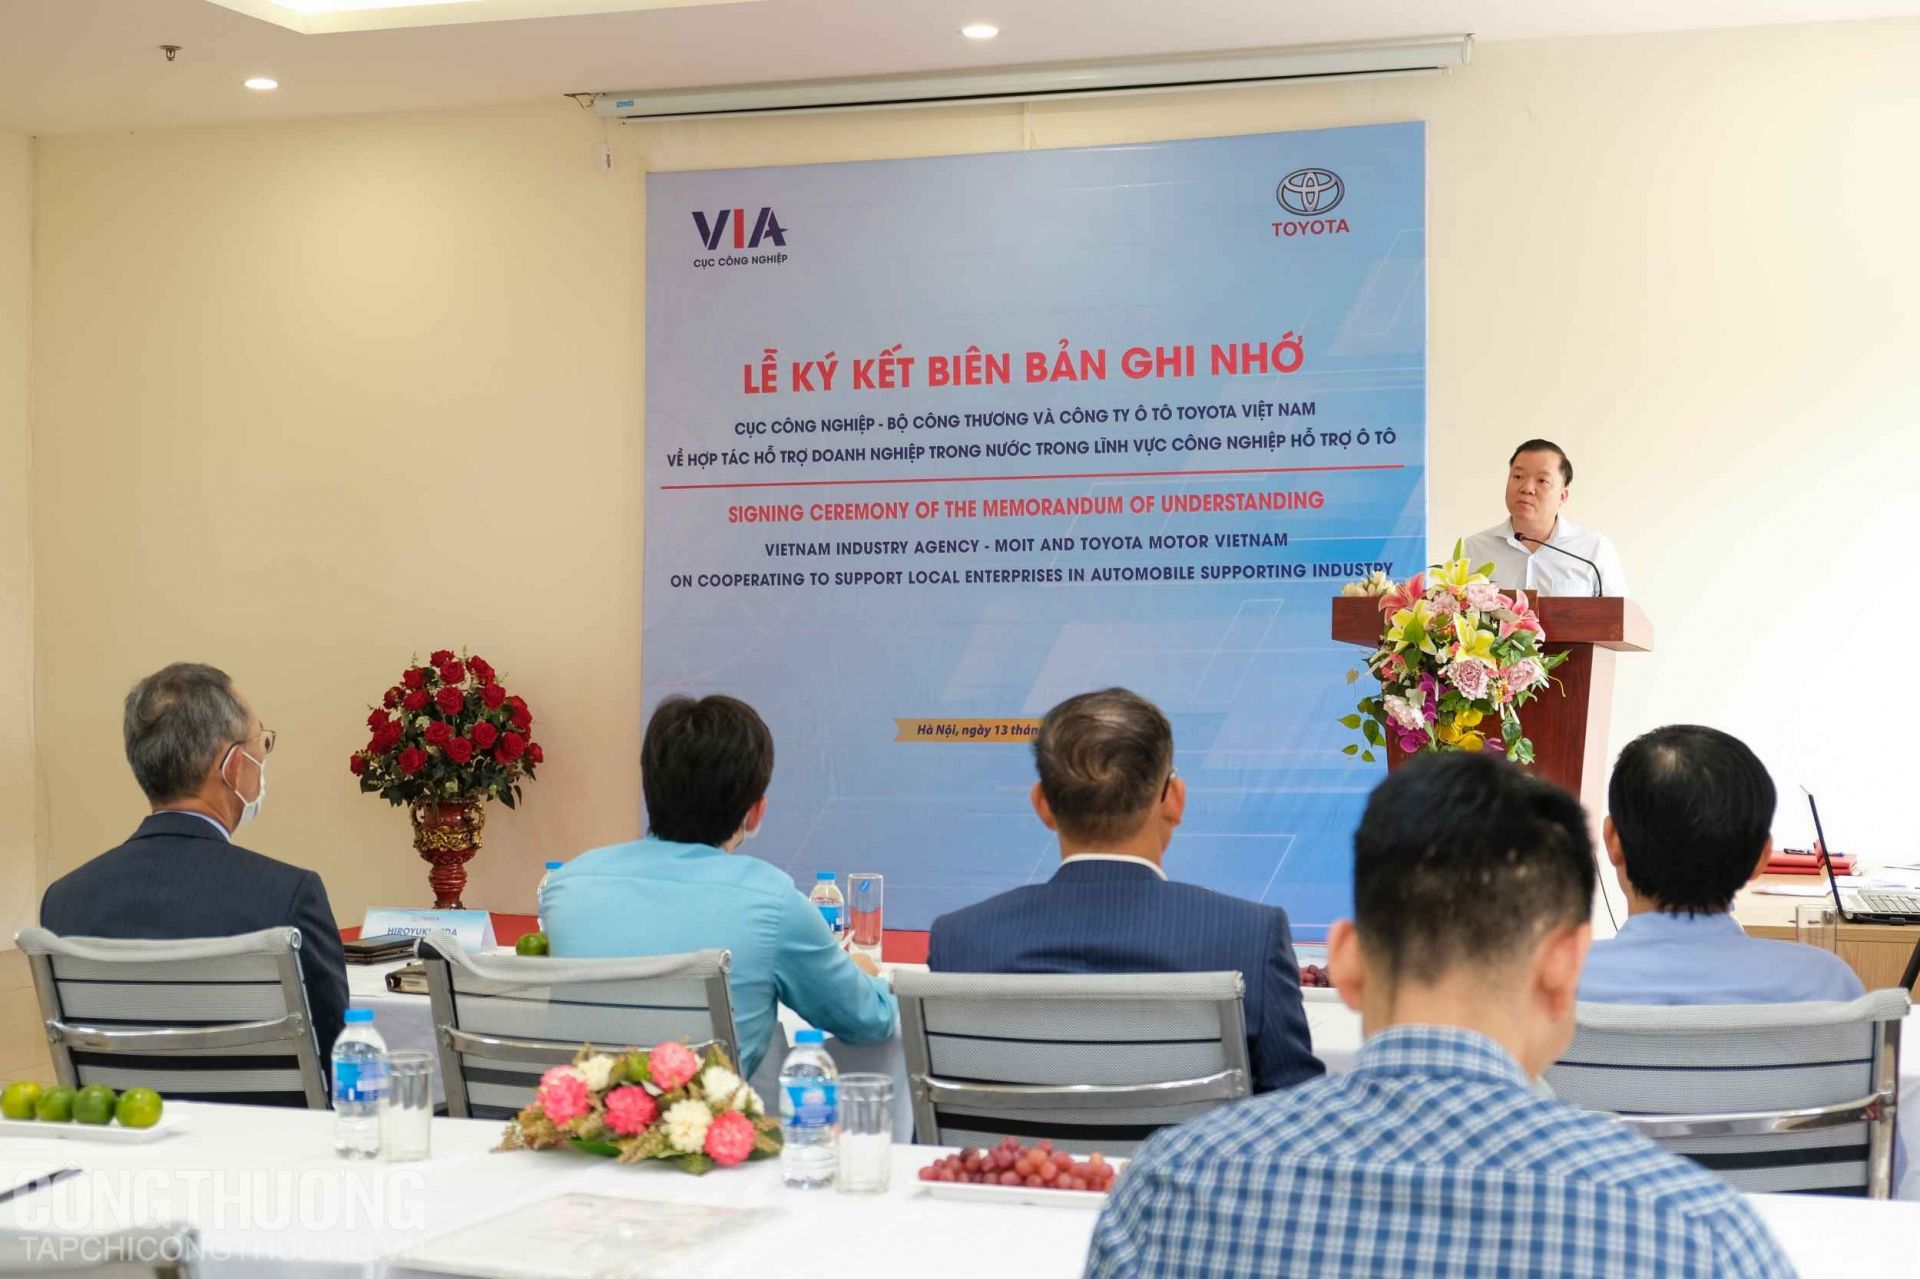 Cục Công nghiệp, Bộ Công Thương và Công ty Ô tô Toyota Việt Nam phối hợp tổ chức Lễ ký kết Biên bản ghi nhớ về việc hợp tác hỗ trợ doanh nghiệp trong nước trong lĩnh vực công nghiệp hỗ trợ ô tô